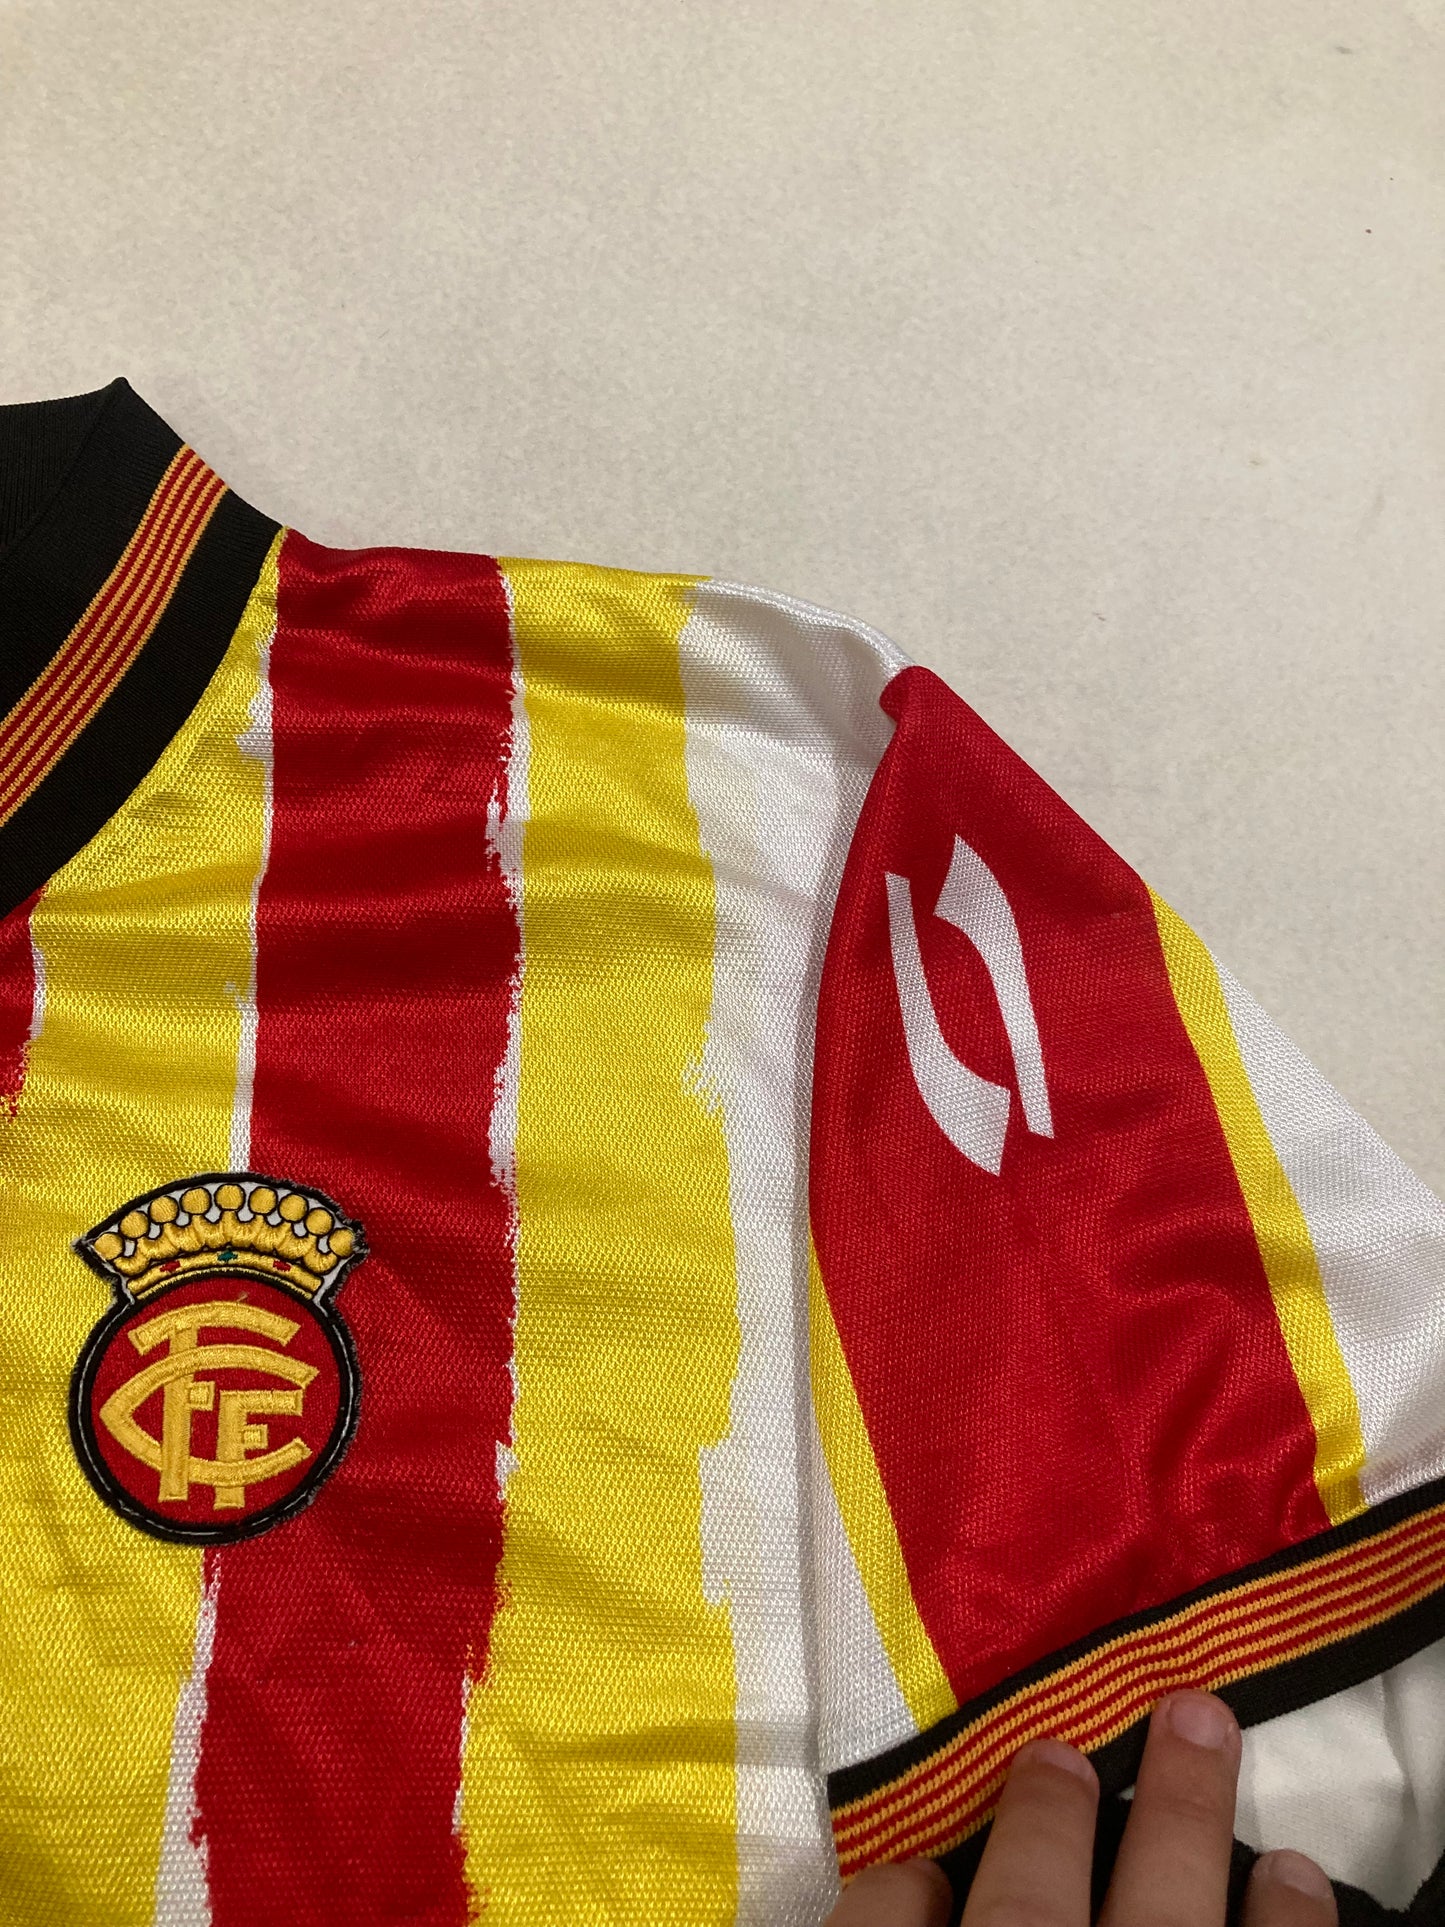 Camiseta Puma Selección Catalana 1998 ‘First Kit seleccion catalana Ever’ Vintage - M